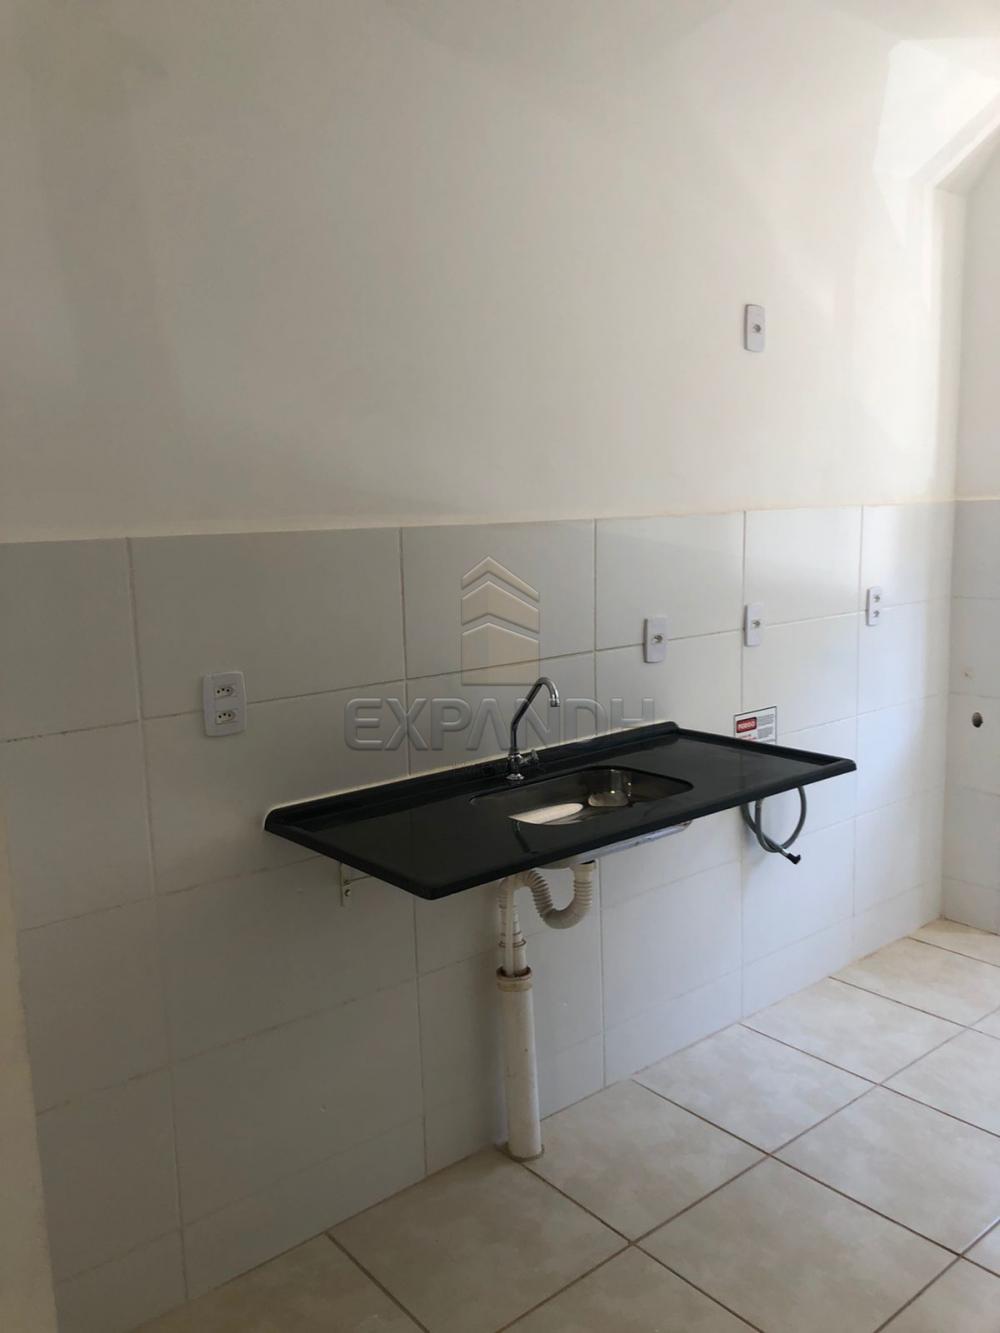 Alugar Apartamentos / Padrão em Sertãozinho R$ 500,00 - Foto 8